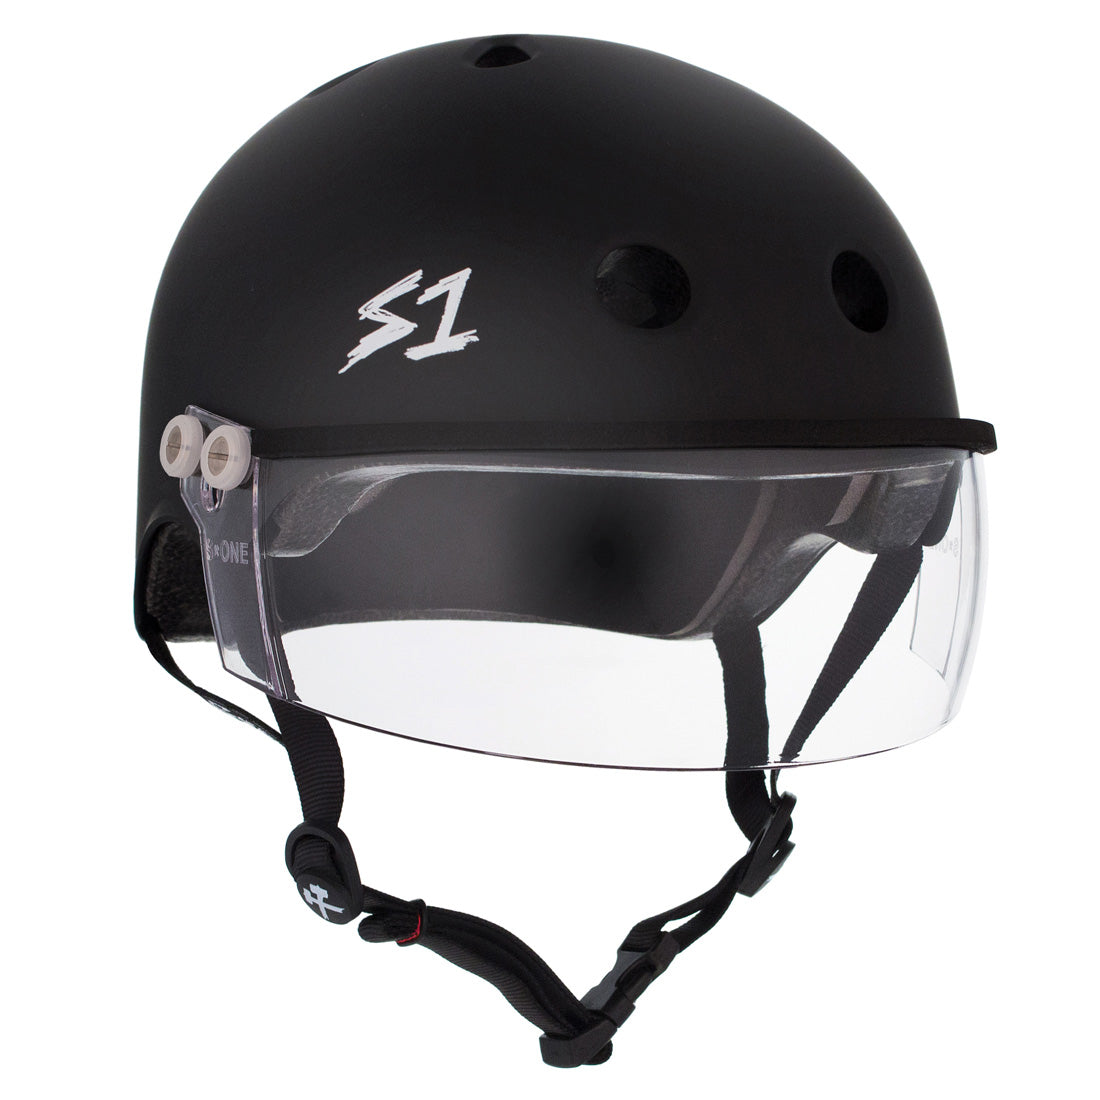 S-One Visor Lifer Helmet - Black Matte Helmets